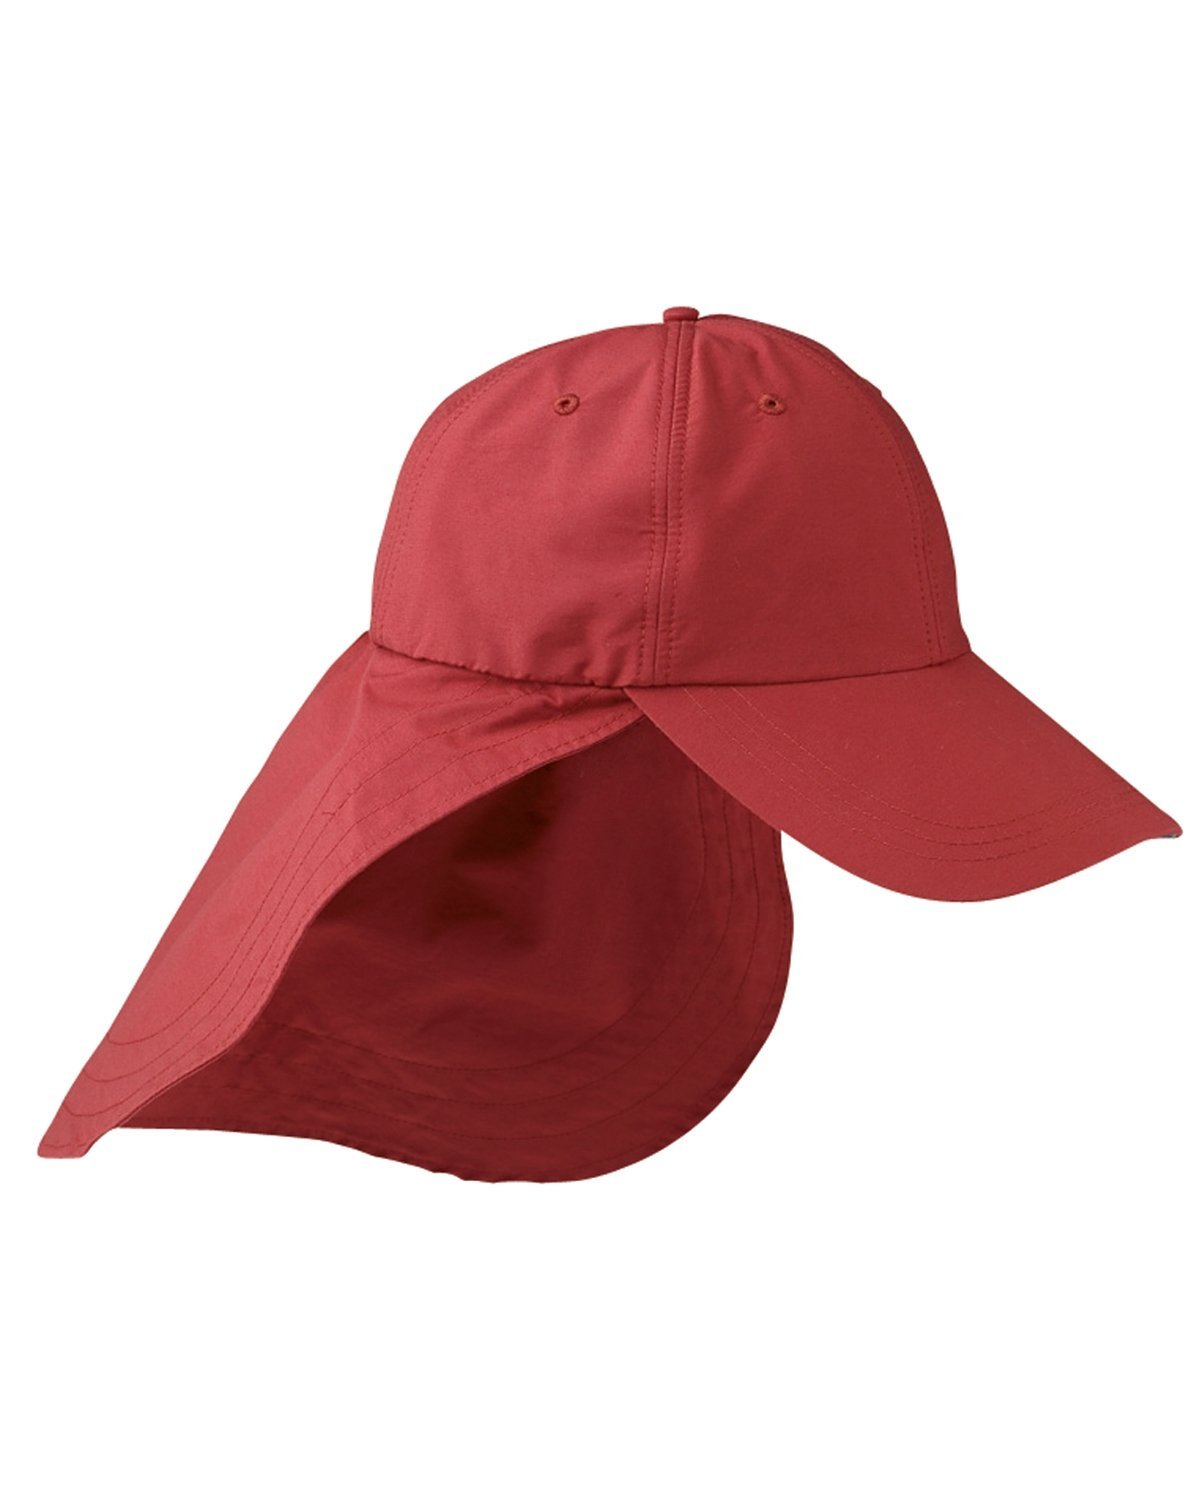 EOM101-Adams-NAUTICAL RED-Adams-Headwear-1